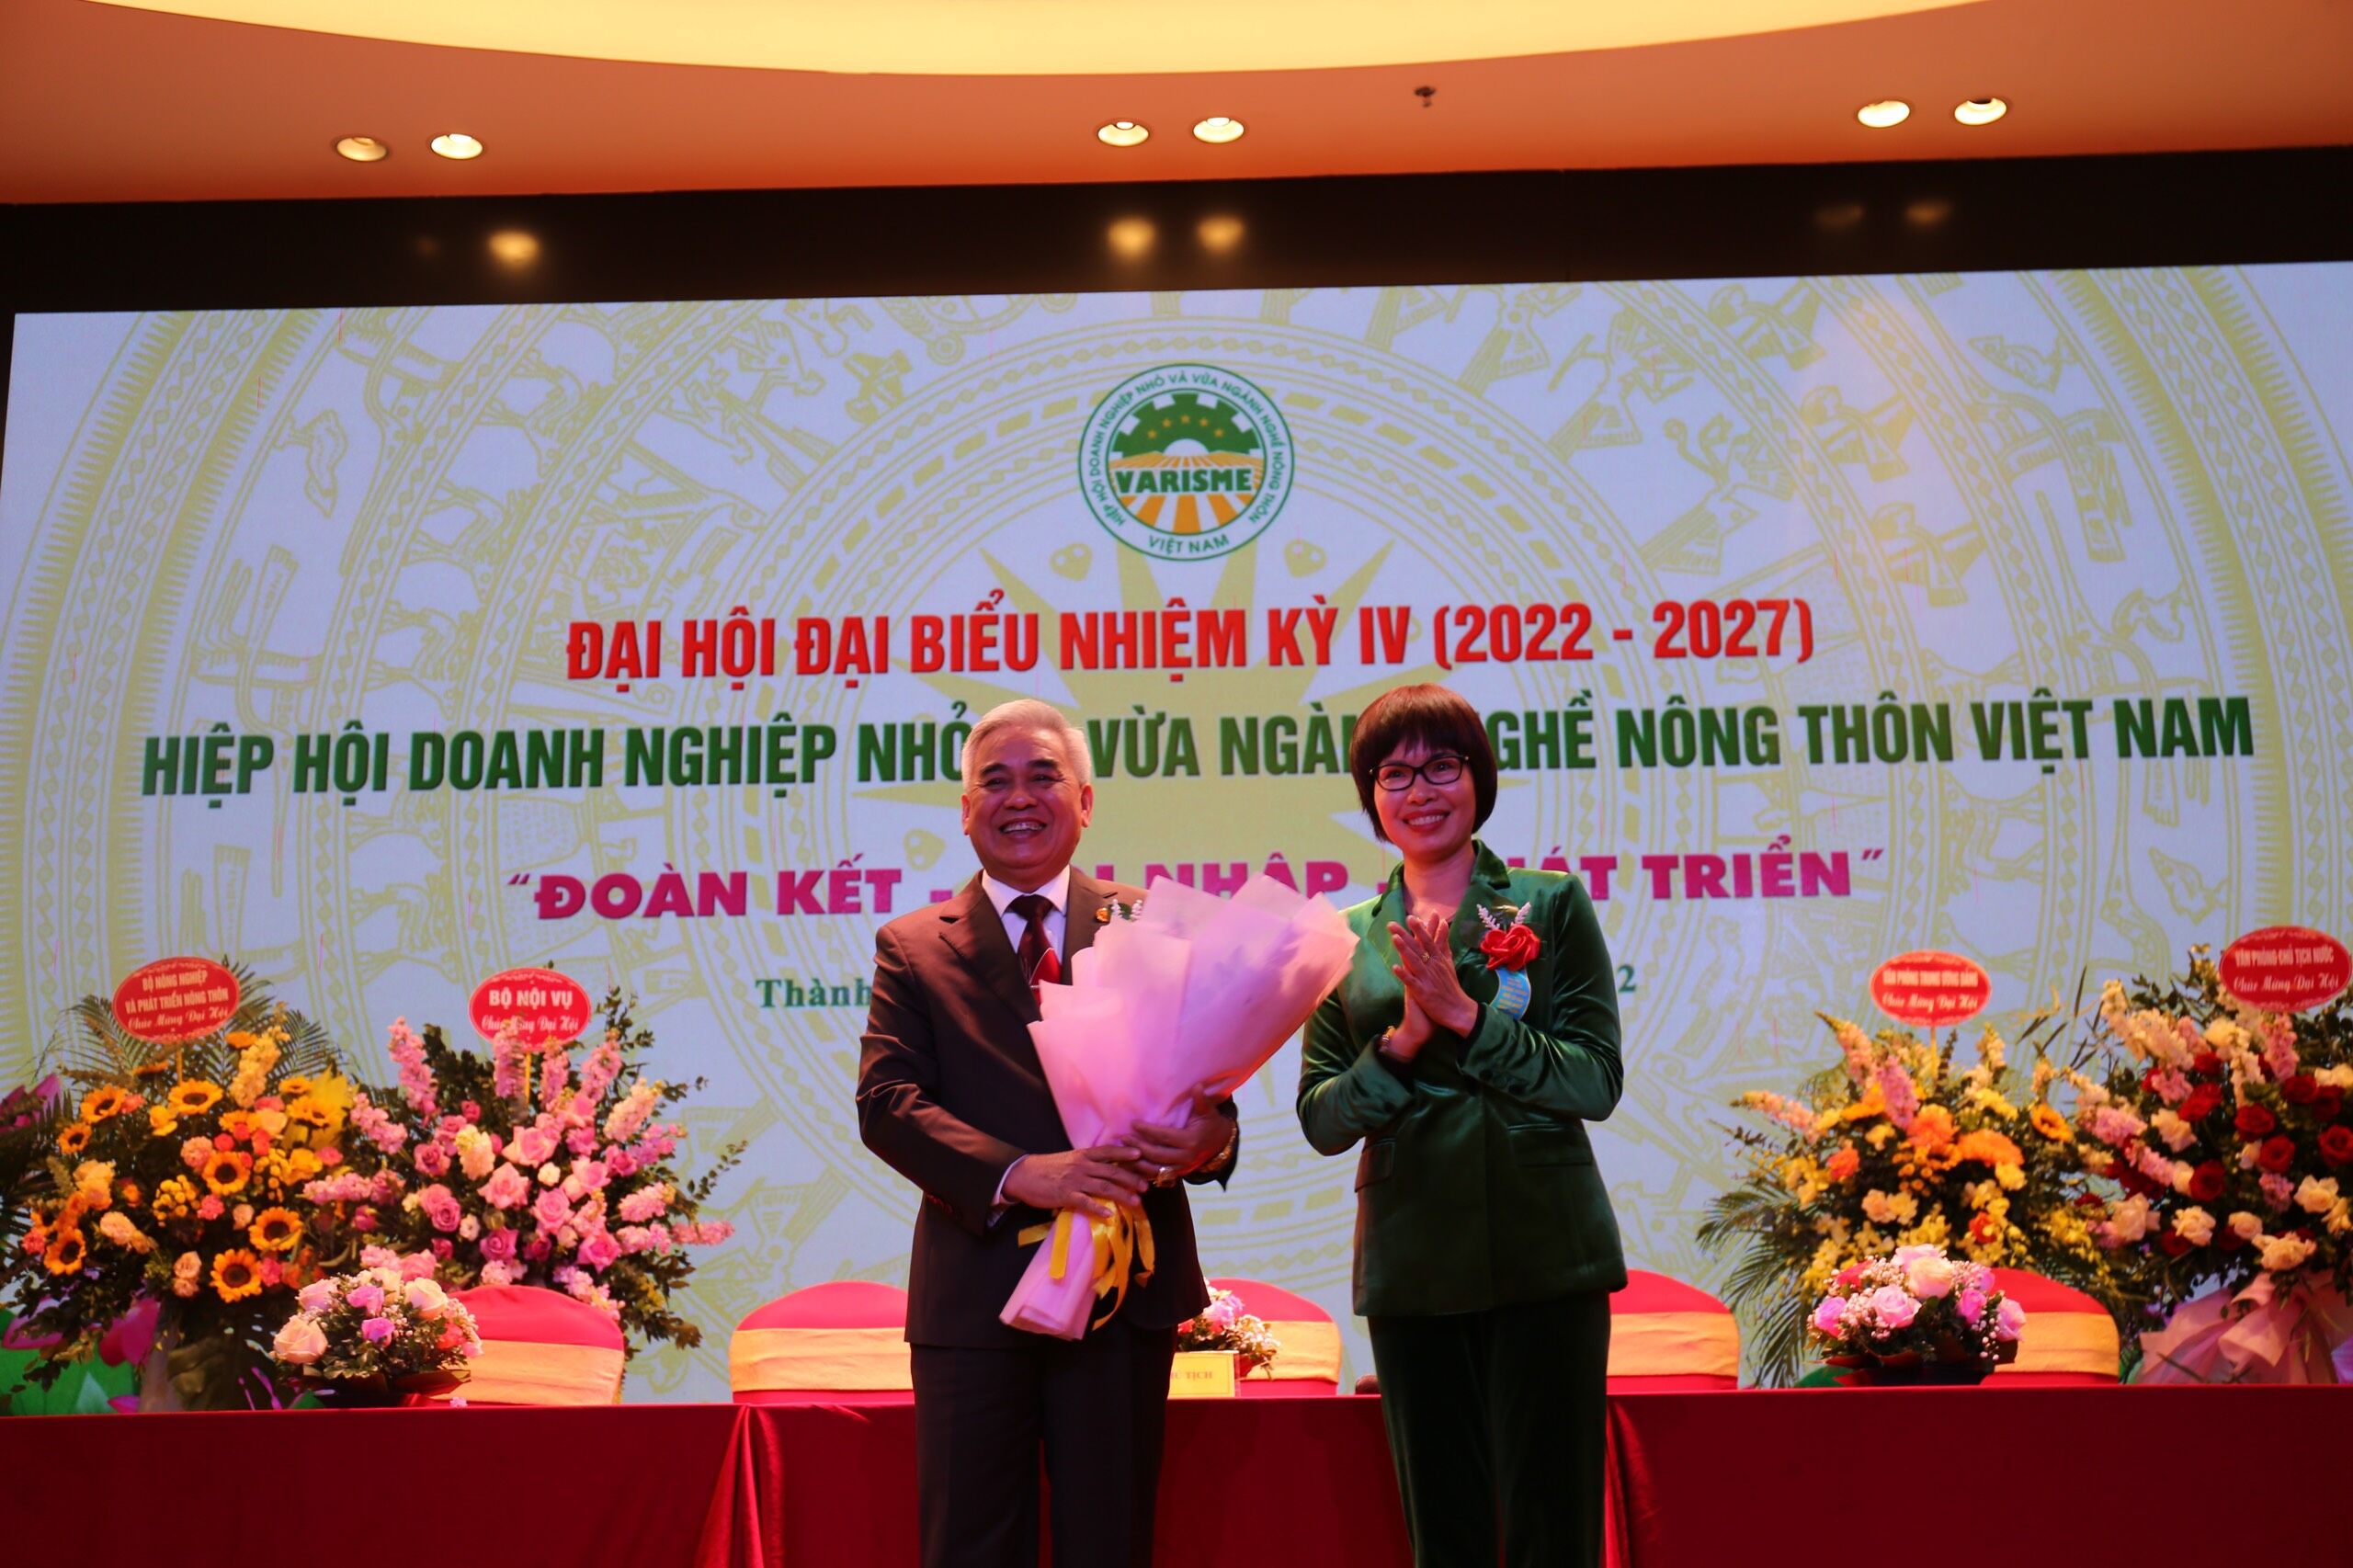 Đồng chí Nguyễn Thị Tuyết Mai tặng hoa cho Chủ tịch nhiệm kỳ mới.